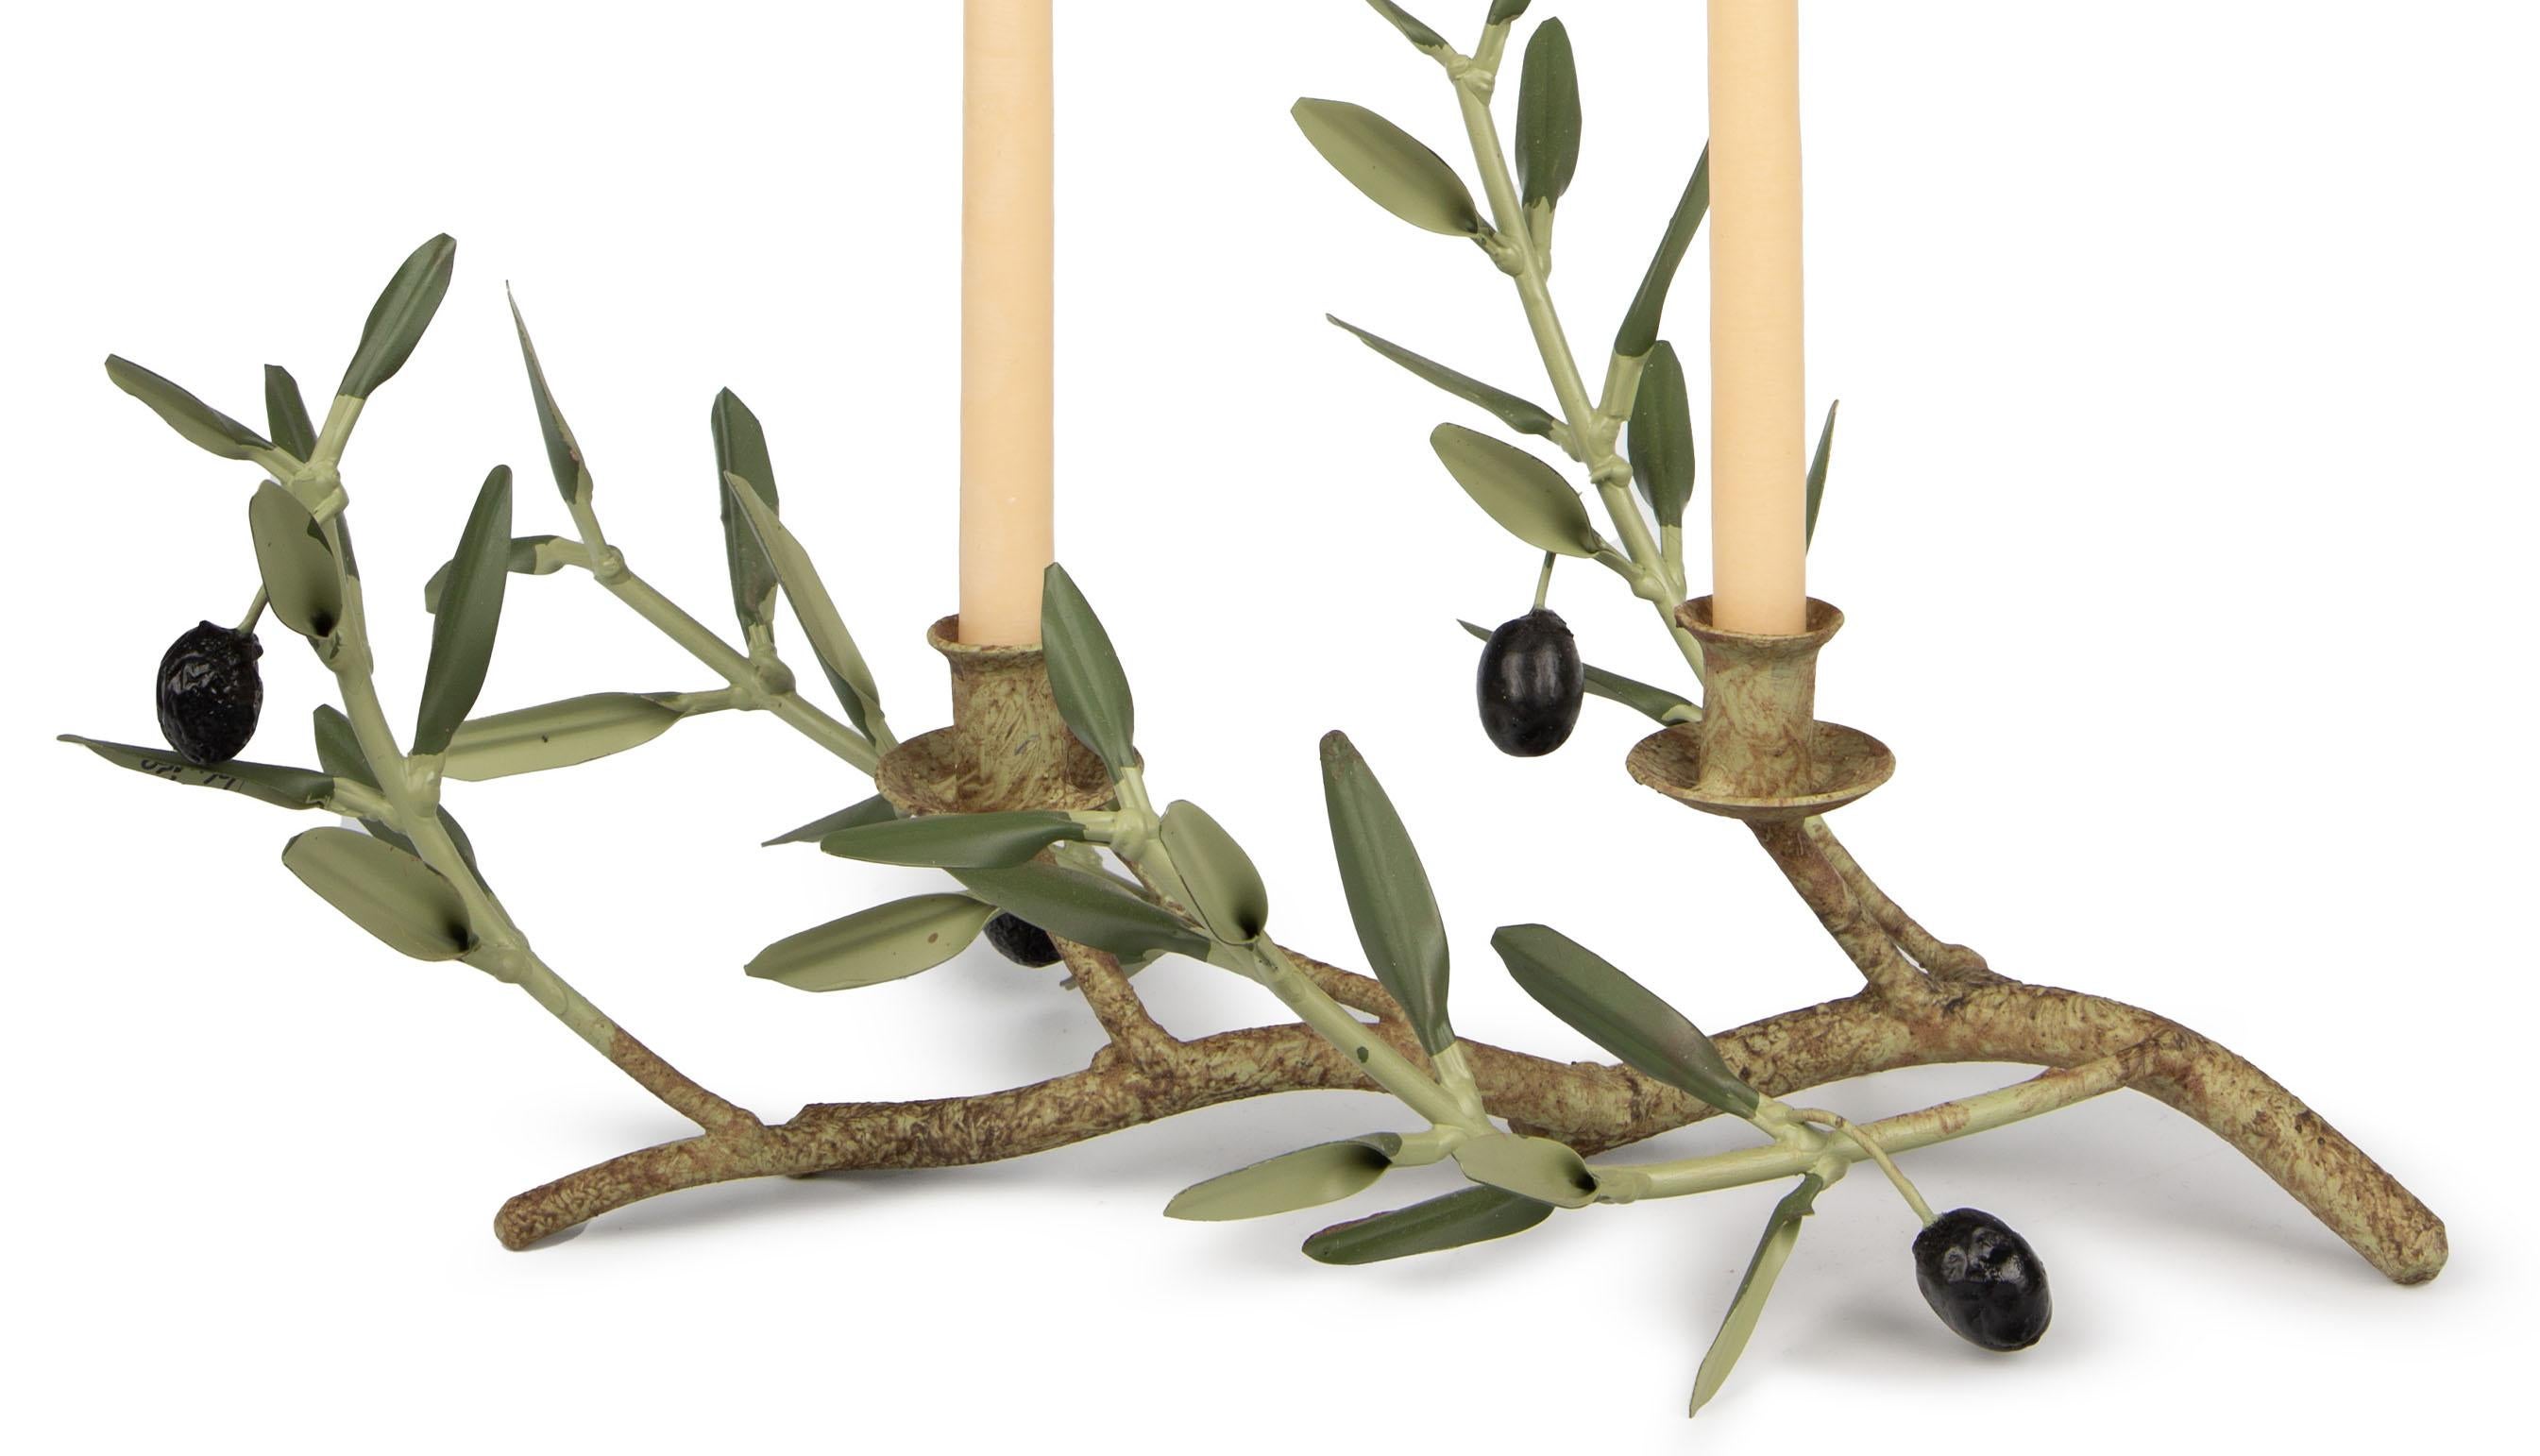 Dieser mit viel Liebe zum Detail gefertigte Olive Branch Double Candle Holder ist ein Zeugnis für die exquisite Handwerkskunst der französischen Provence. Jedes handgefertigte Stück verkörpert die heitere Schönheit des Olivenzweigs, der Frieden und